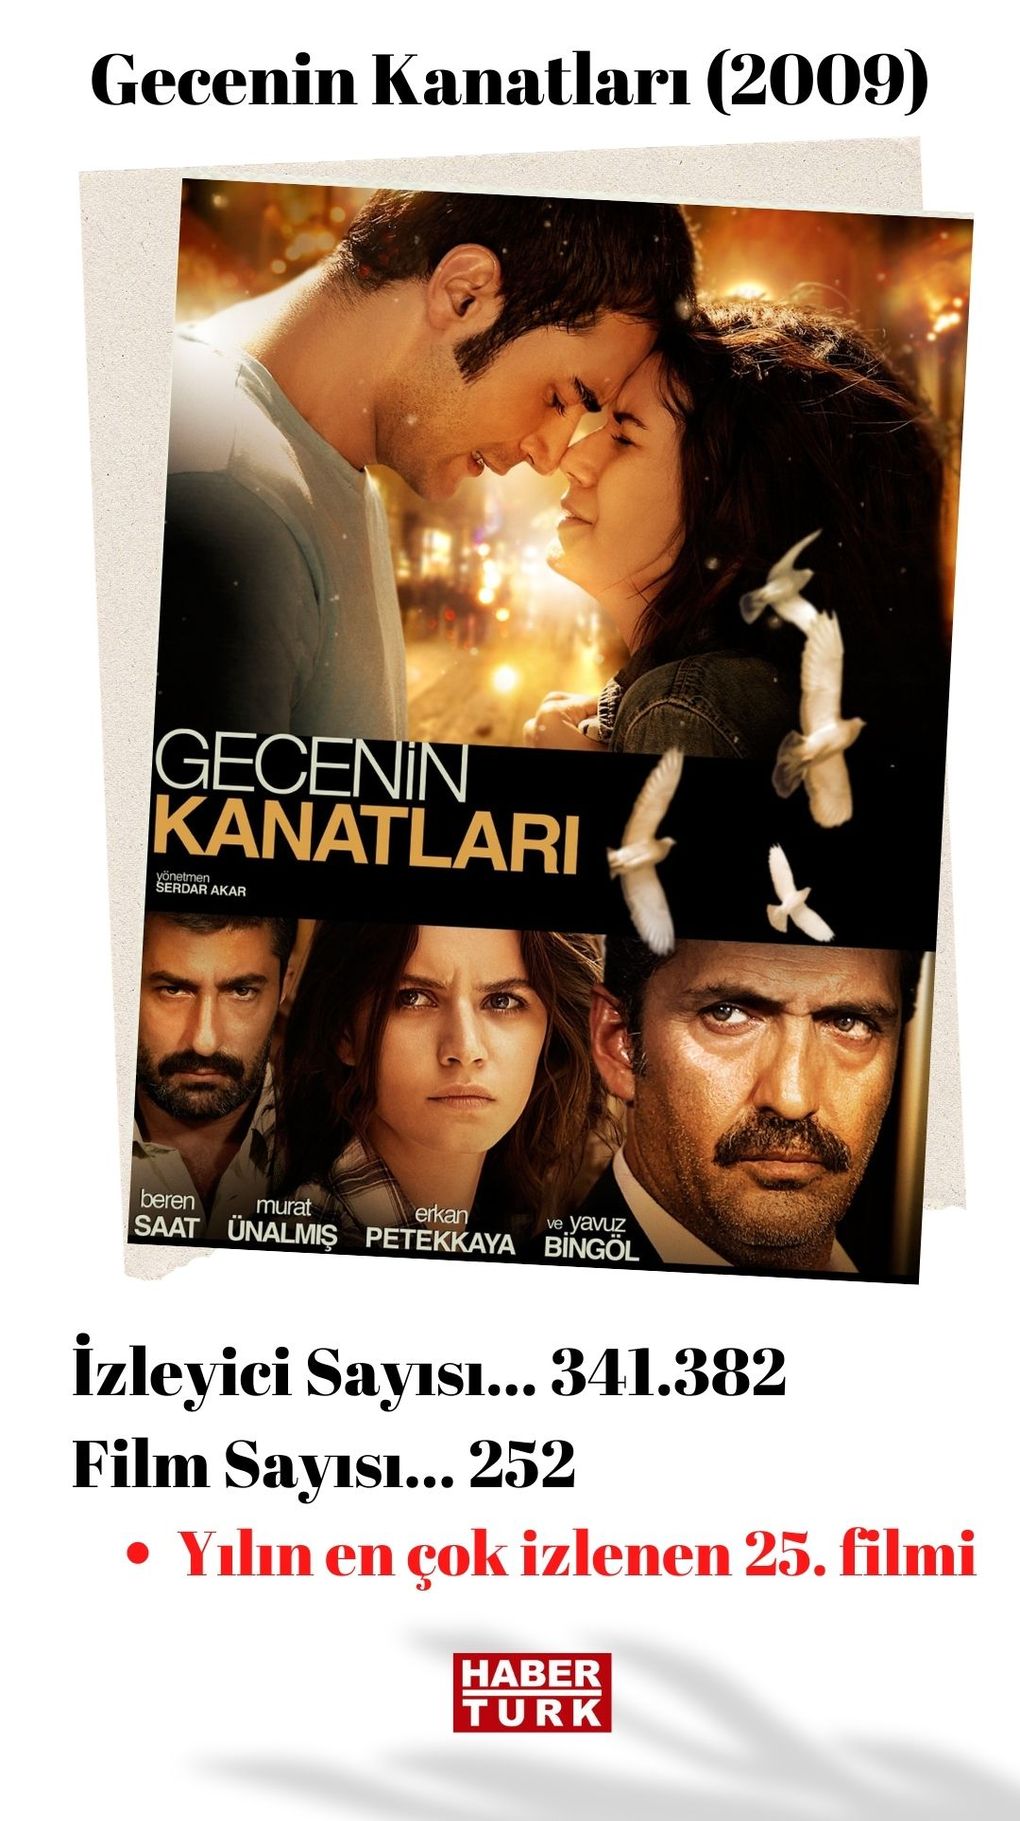 'Gecenin Kanatları', Mahsun Kırmızıgül'ün senaryosunu yazıp yönetmediği tek film oldu. Bu filmi Serdar Akar yönetti. 